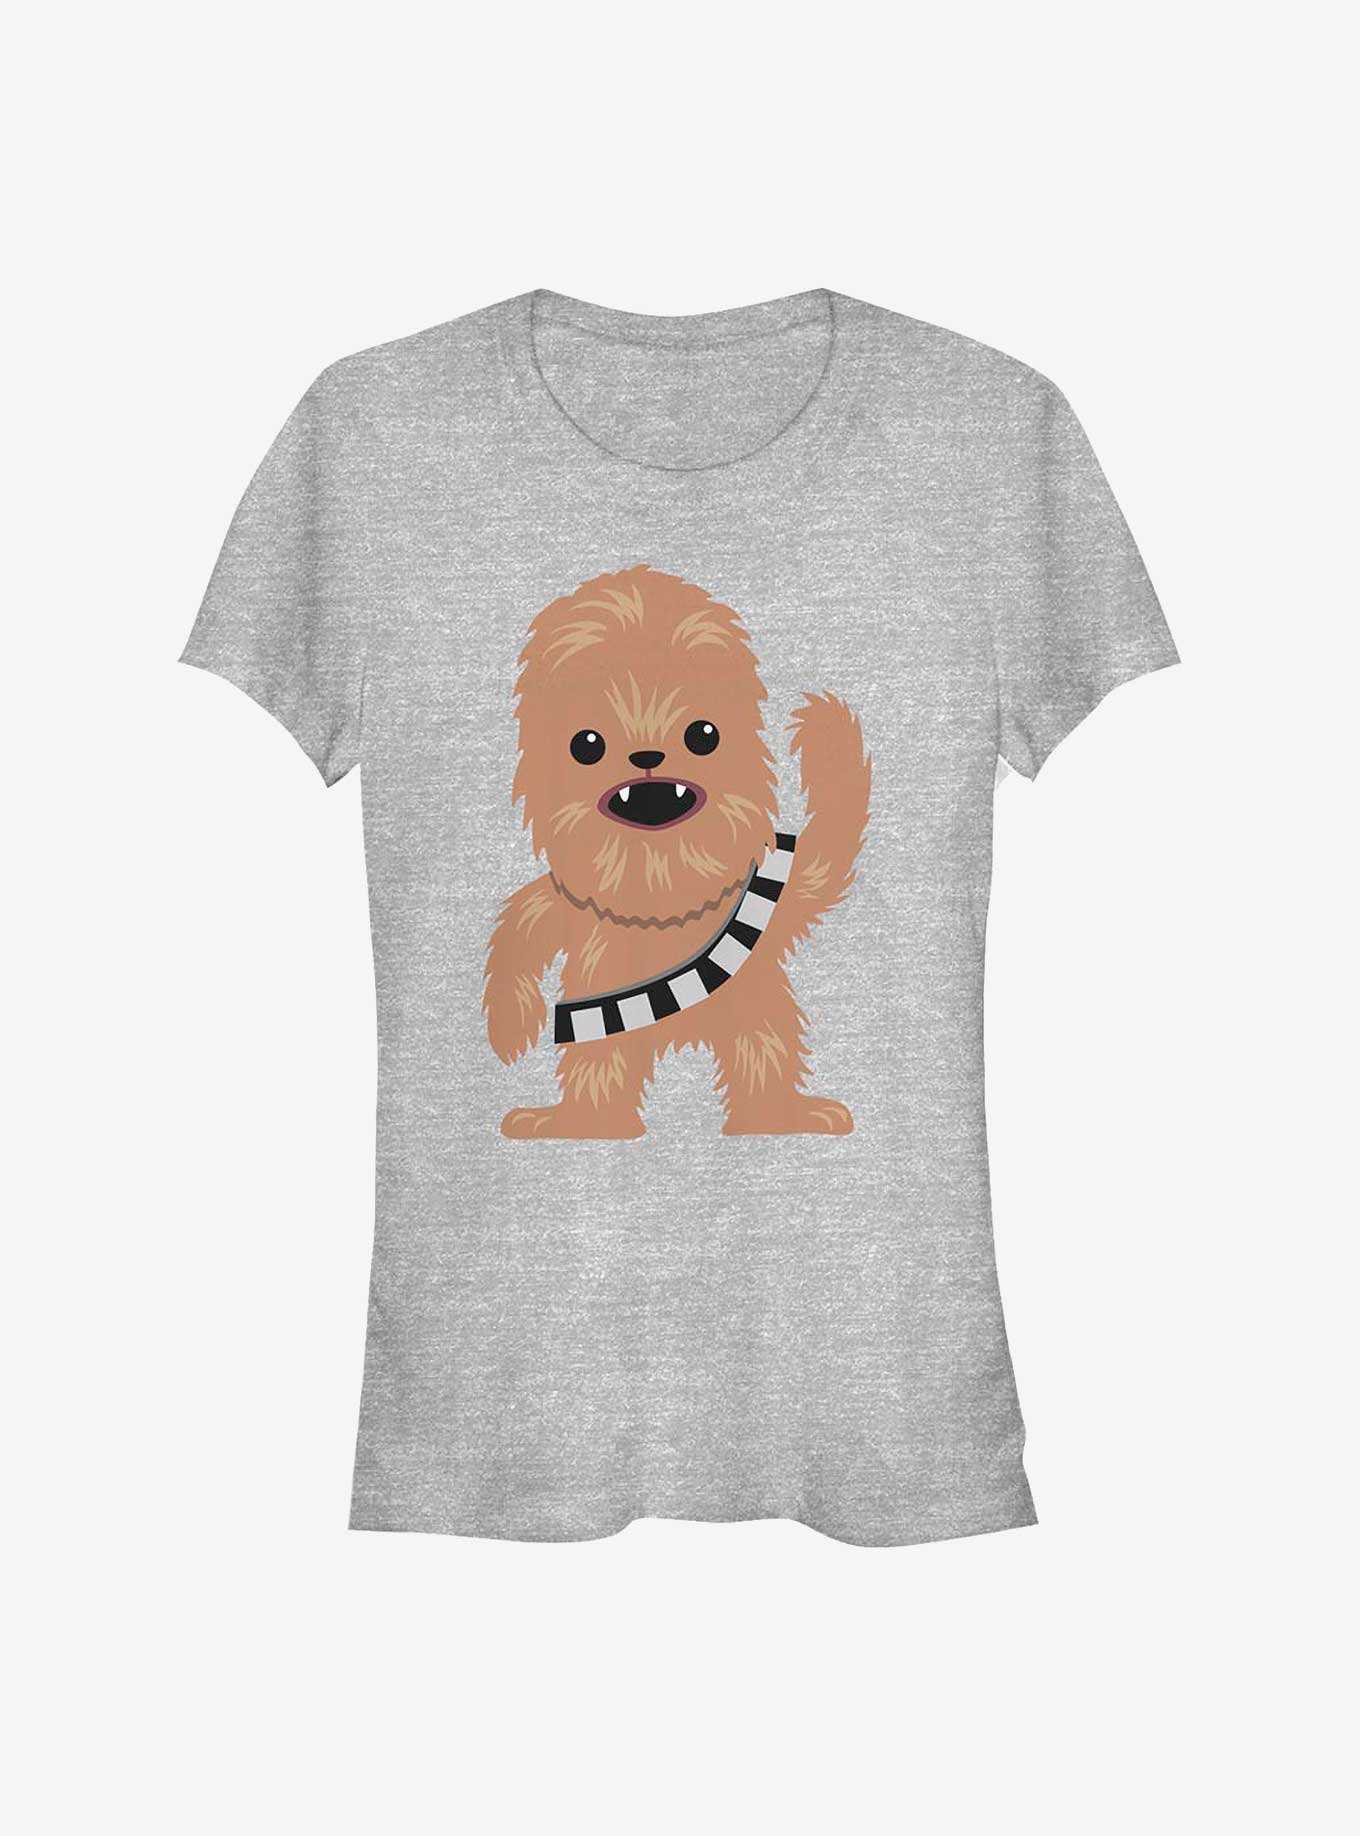 Star Wars Chewie Cutie Girls T-Shirt, , hi-res